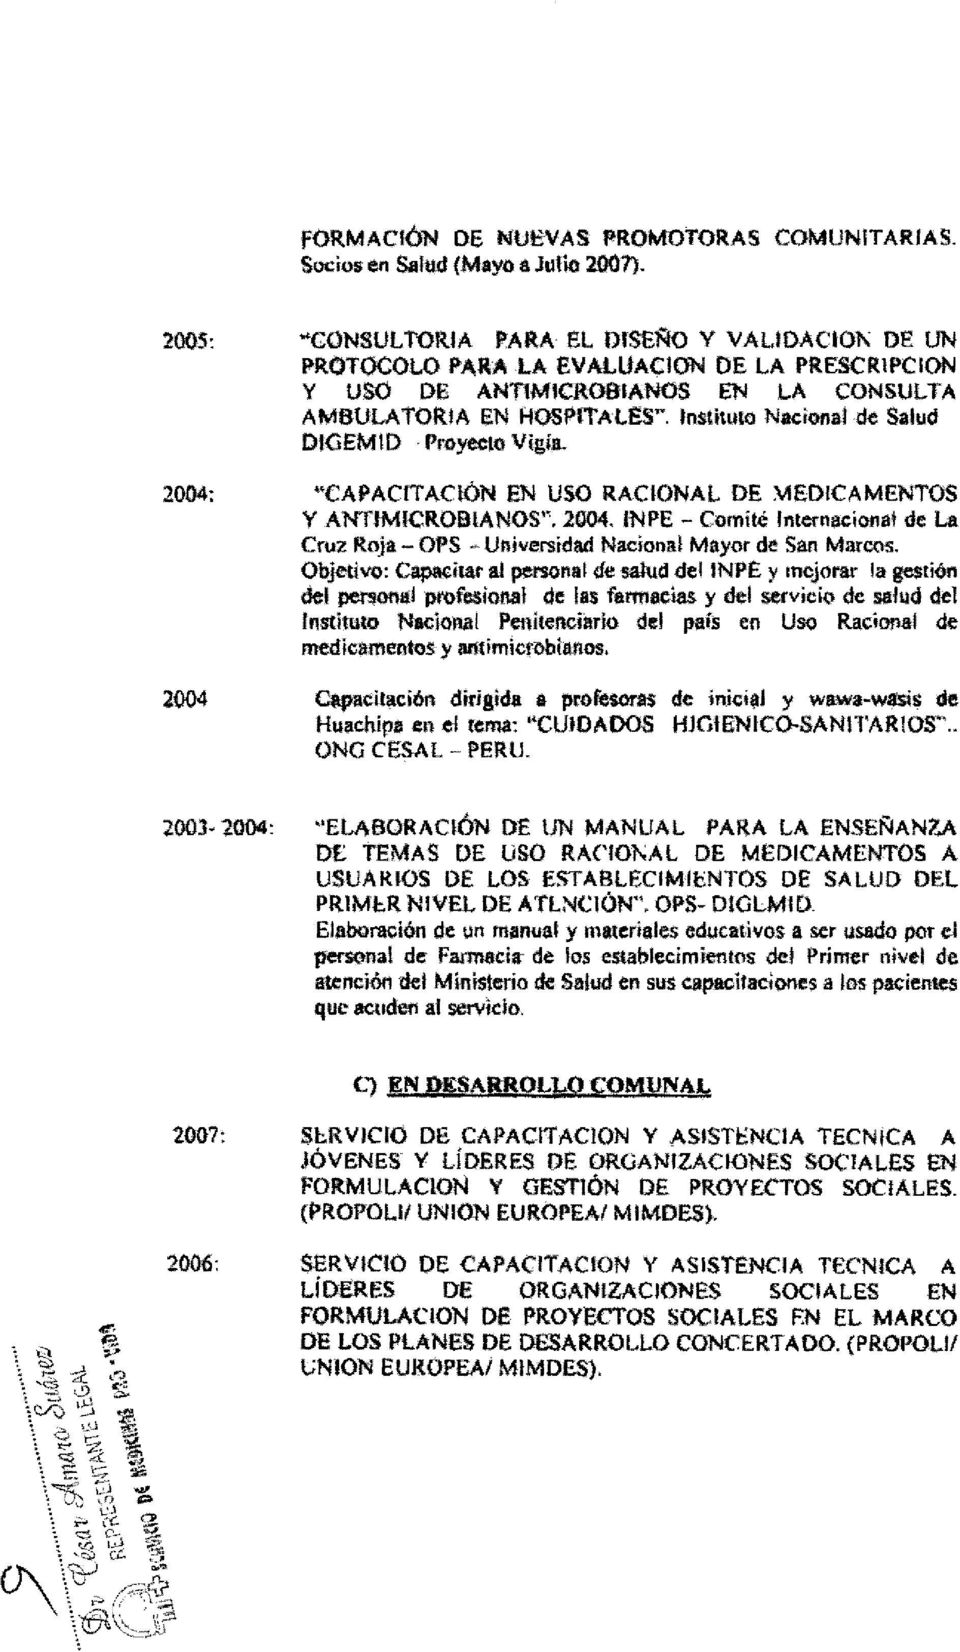 2004: KCAPACITACIÓN EN USO RACIONAL DE MEDICAMENTOS Y ANTIMICROBIANOS". 2004. INPE - Comité Internacional de La Cruz Roja - OPS - Universidad Nacional Mayor de San MarC<\S.